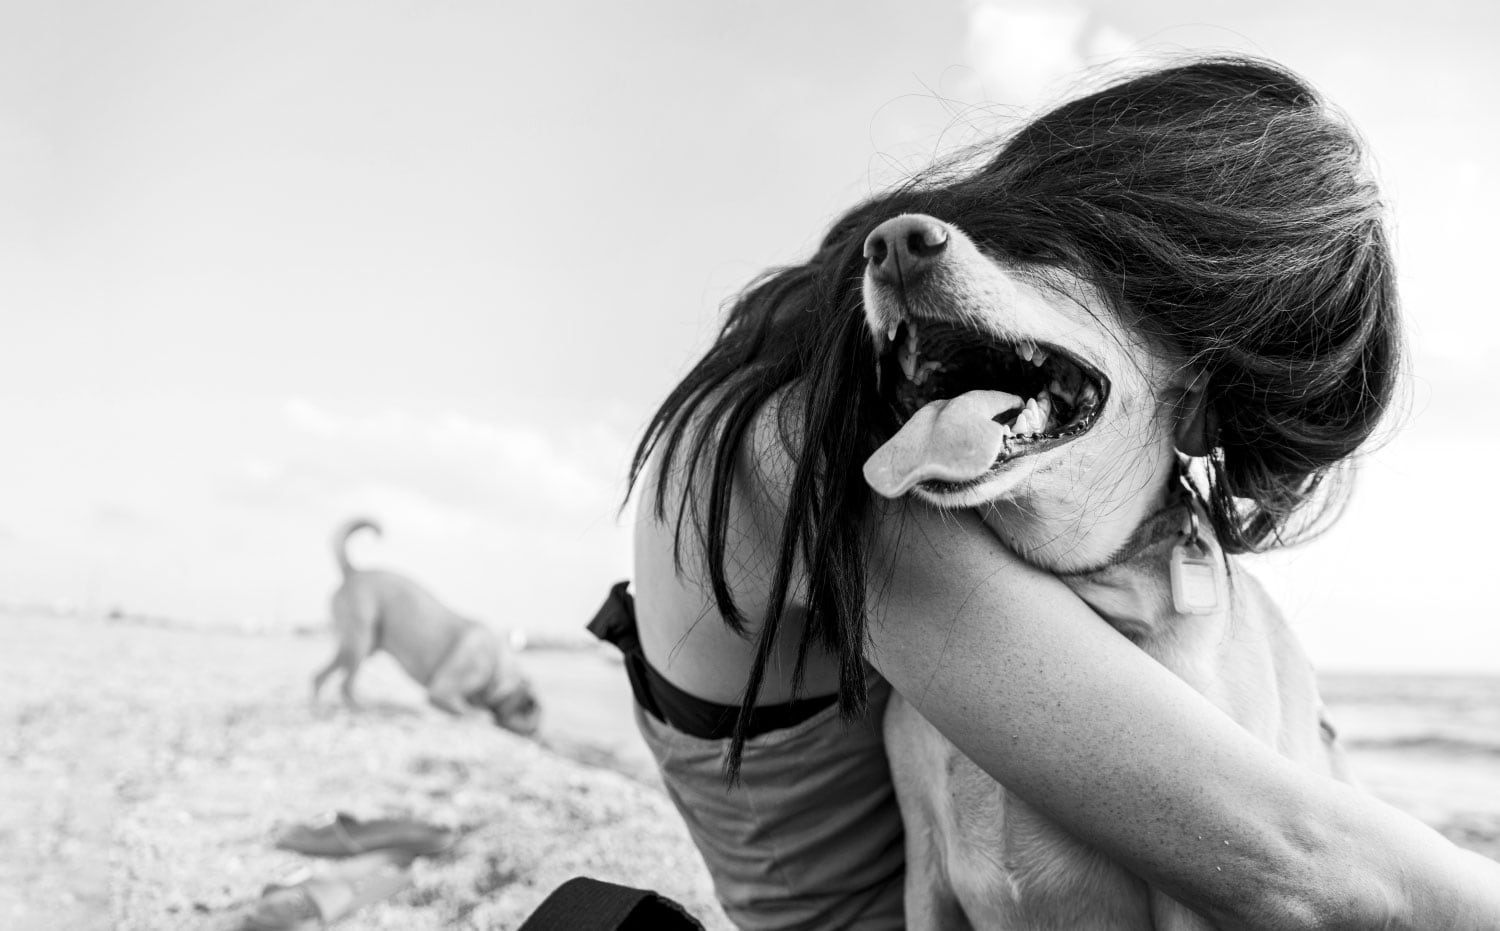 Girl on beach with dog